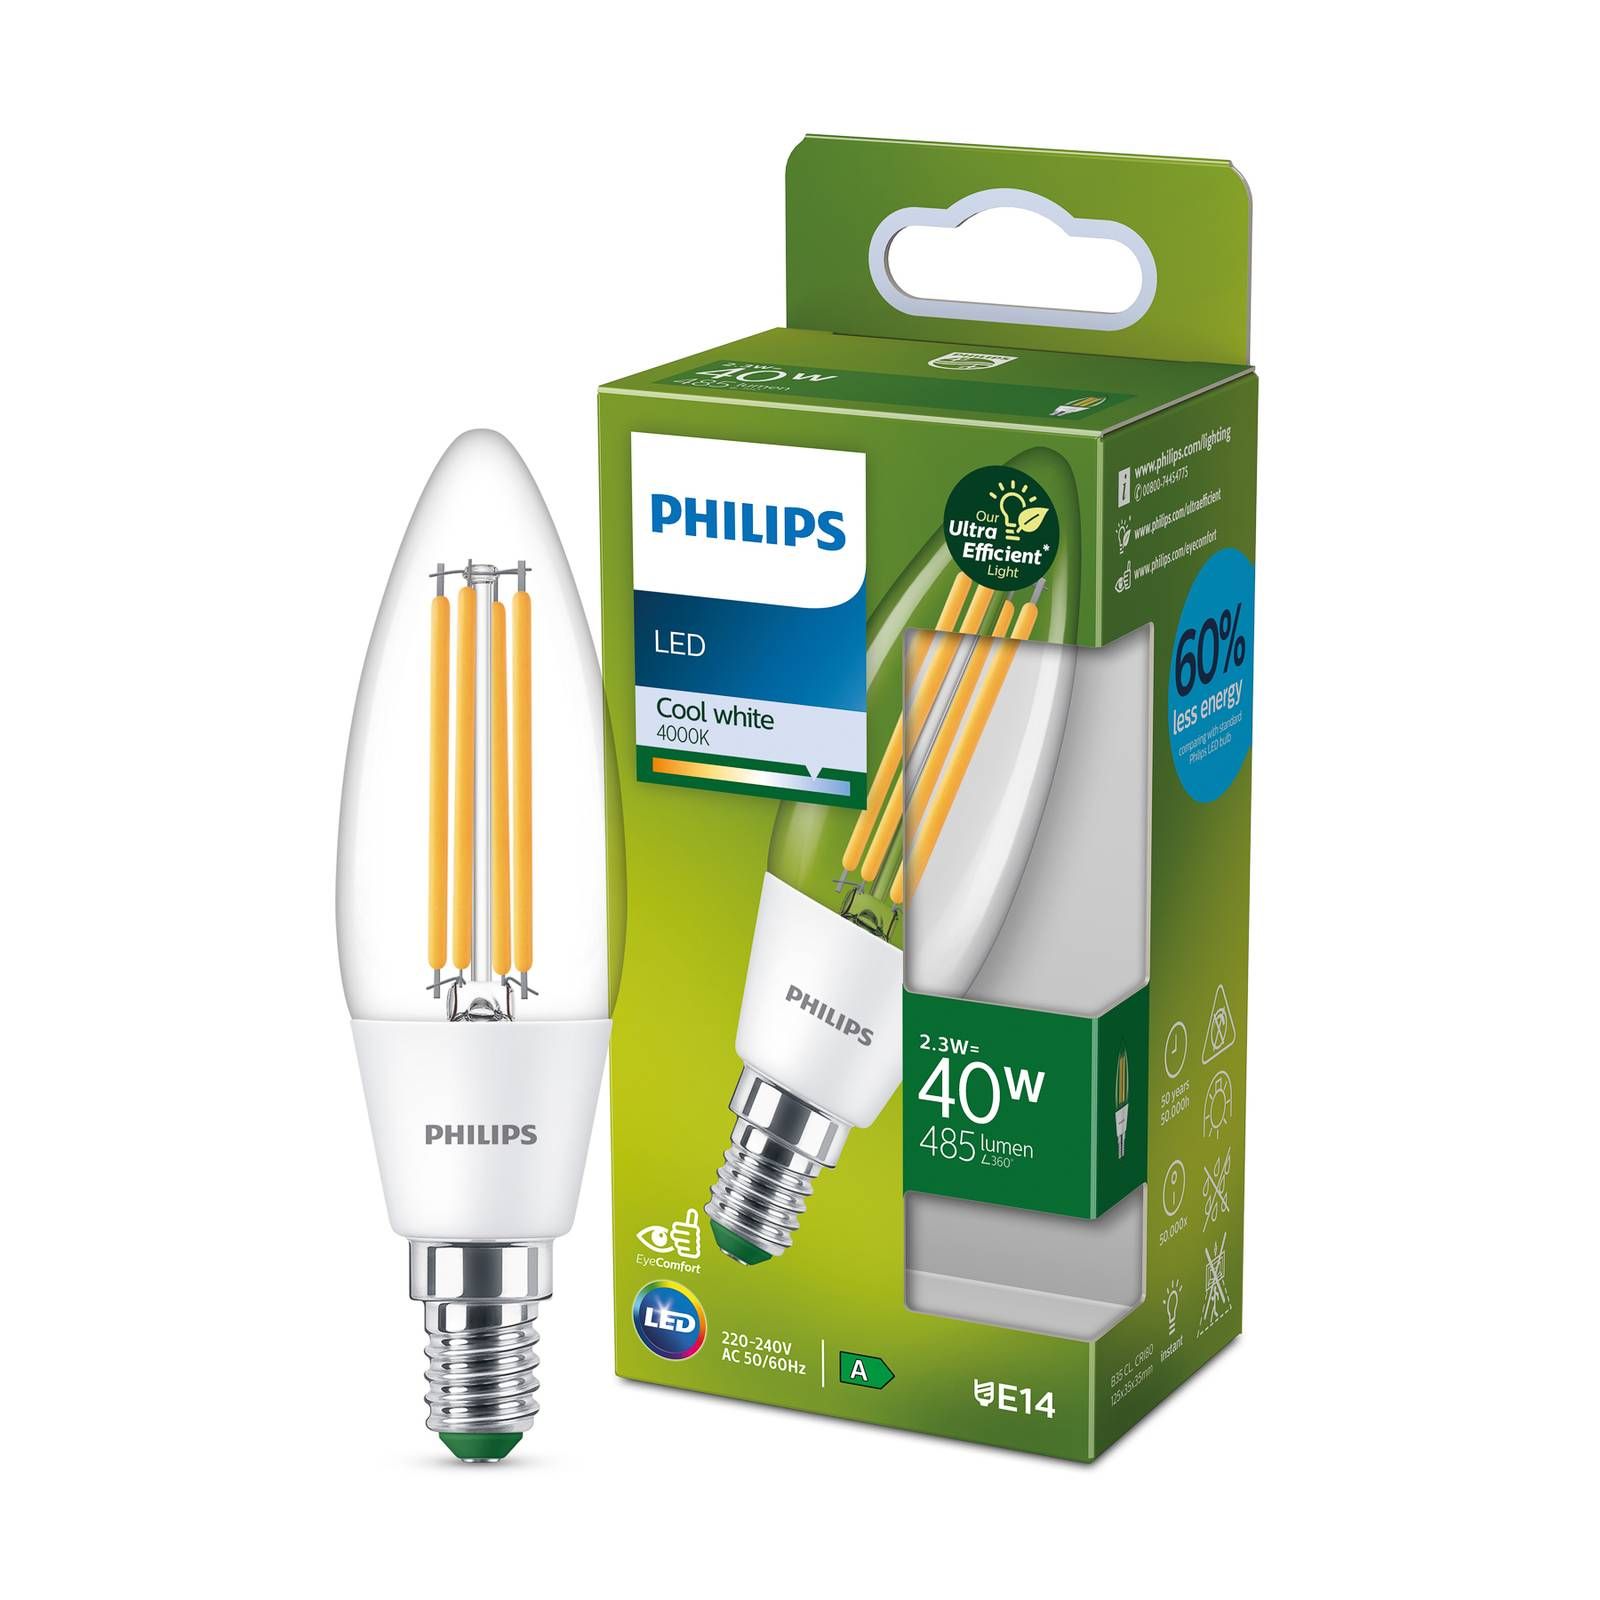 Philips LED žiarovka E14 2, 3W 485lm číra 4 000K, sklo, E14, 2.3W, Energialuokka: A, P: 12.5 cm